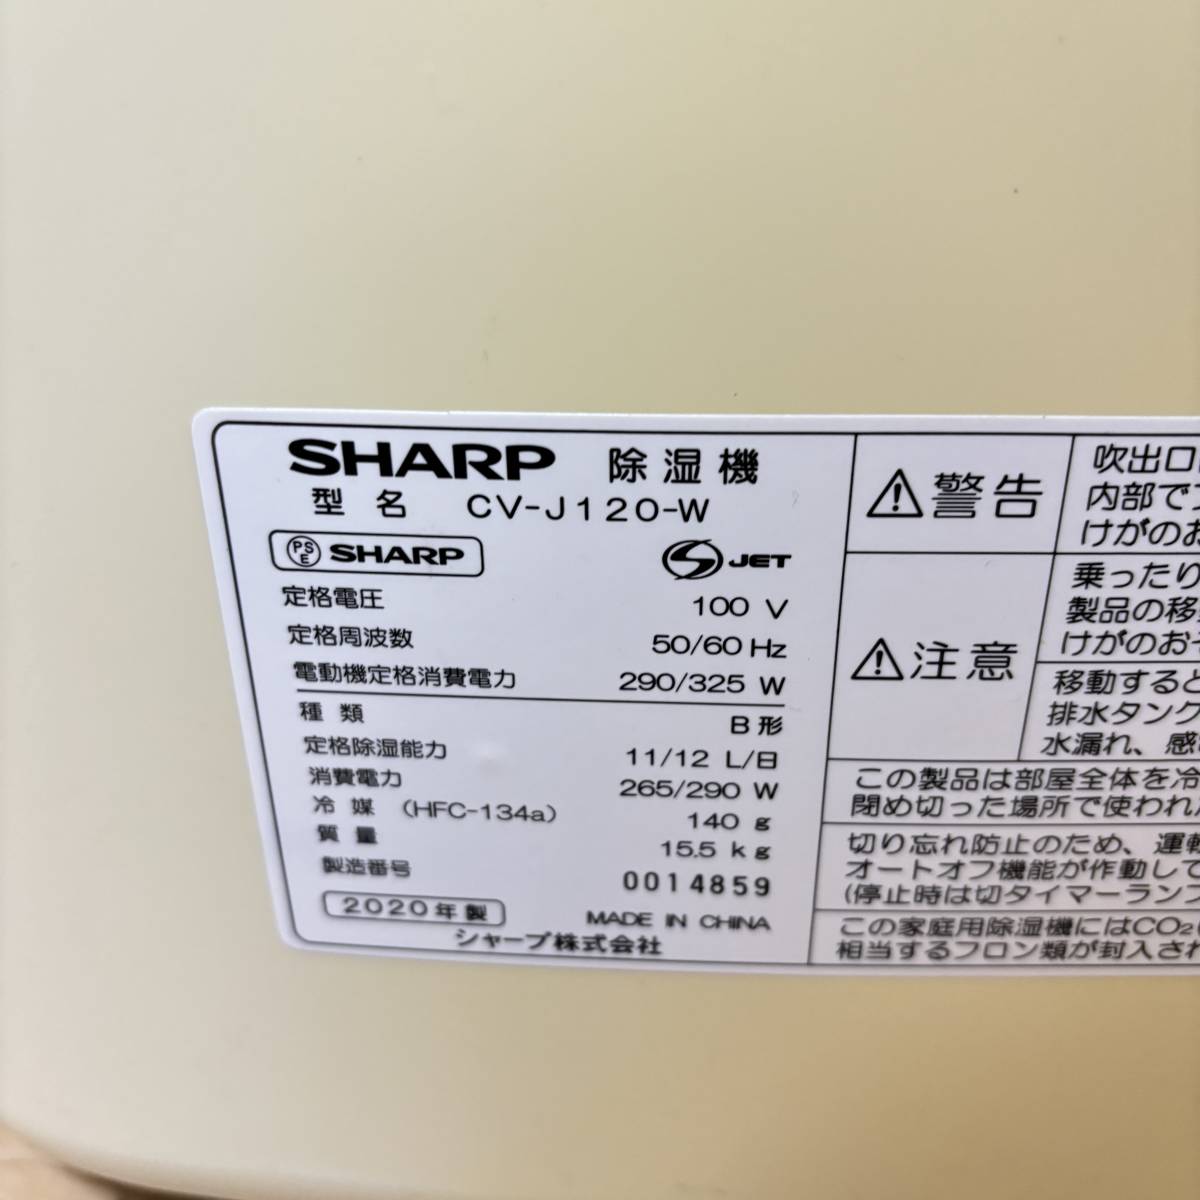 ★動作確認済★ SHARP プラズマクラスター 除湿器 CV-J120-W 2020年製 シャープ_画像5